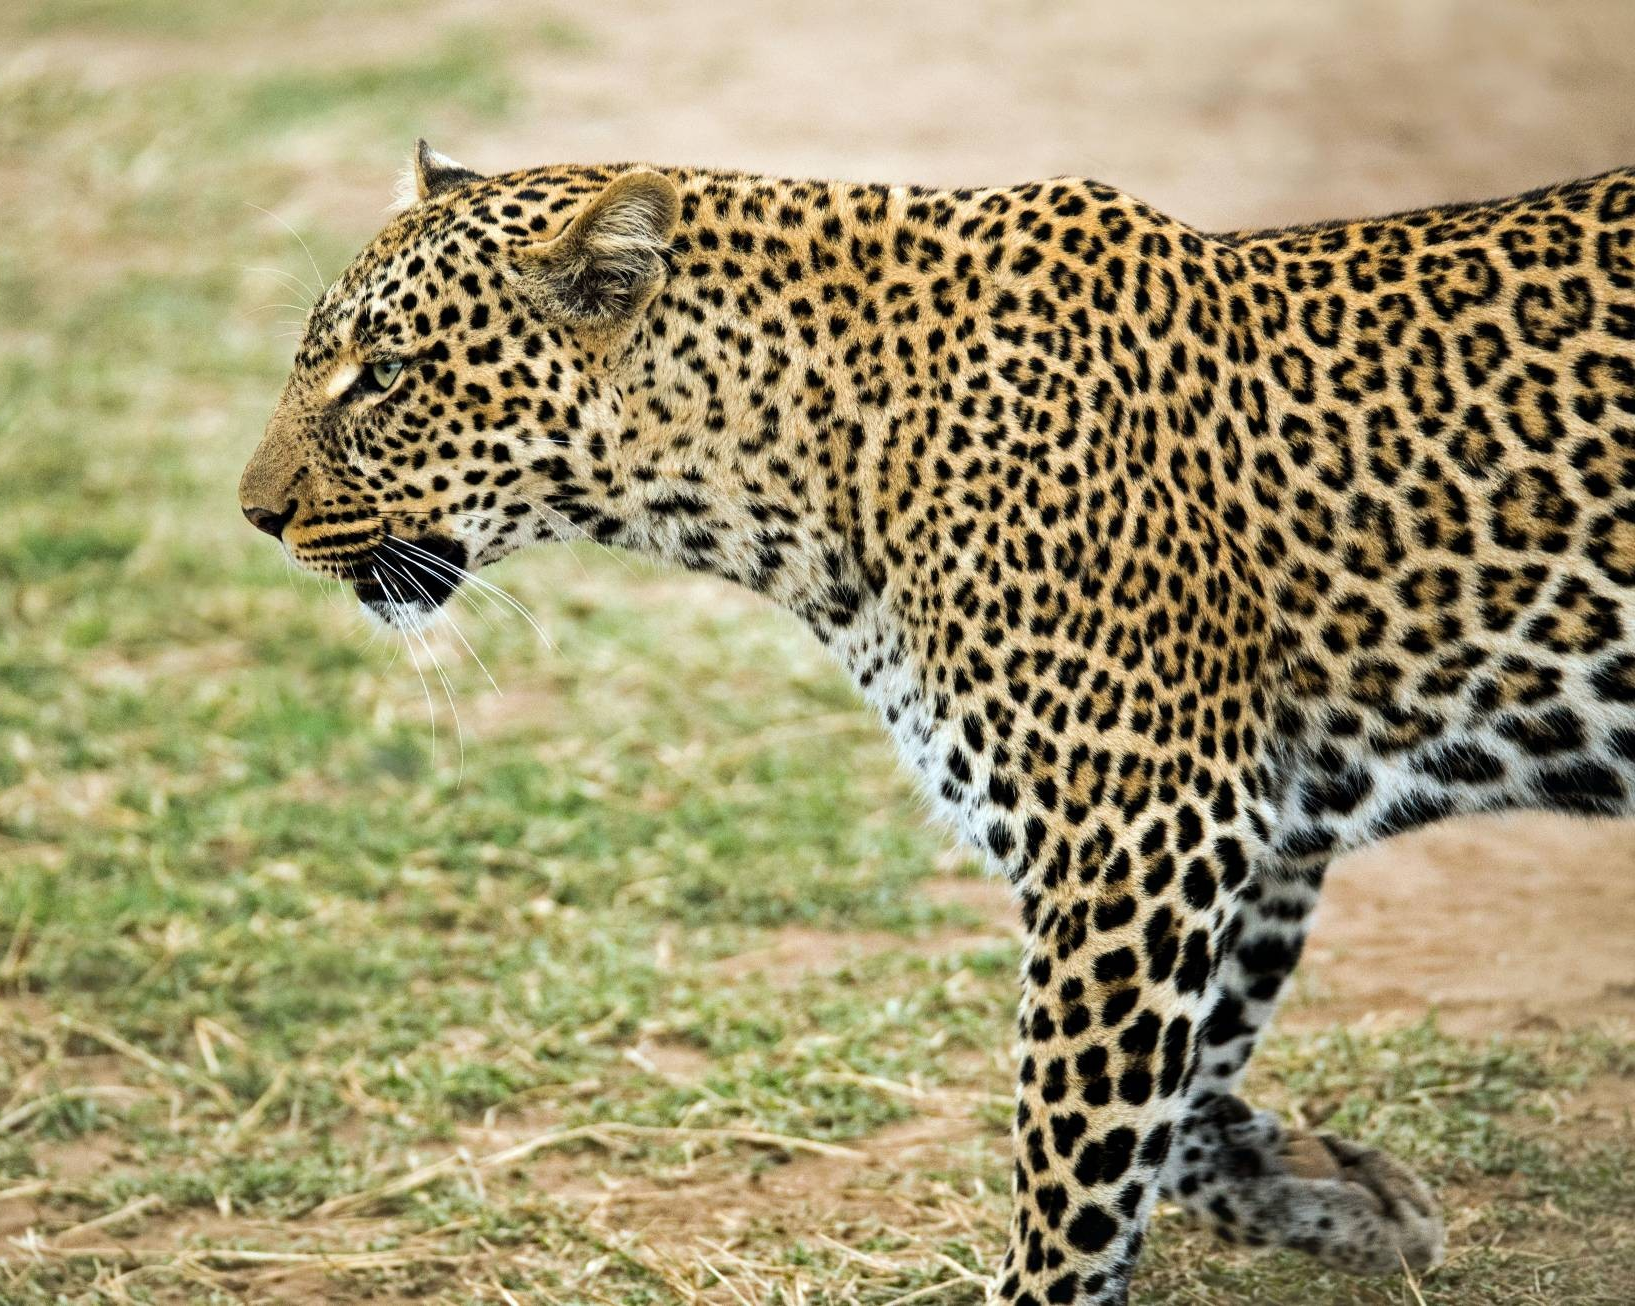  Des chercheurs de Concordia confirment la présence du léopard d’Afrique dans le sud-ouest du Cameroun